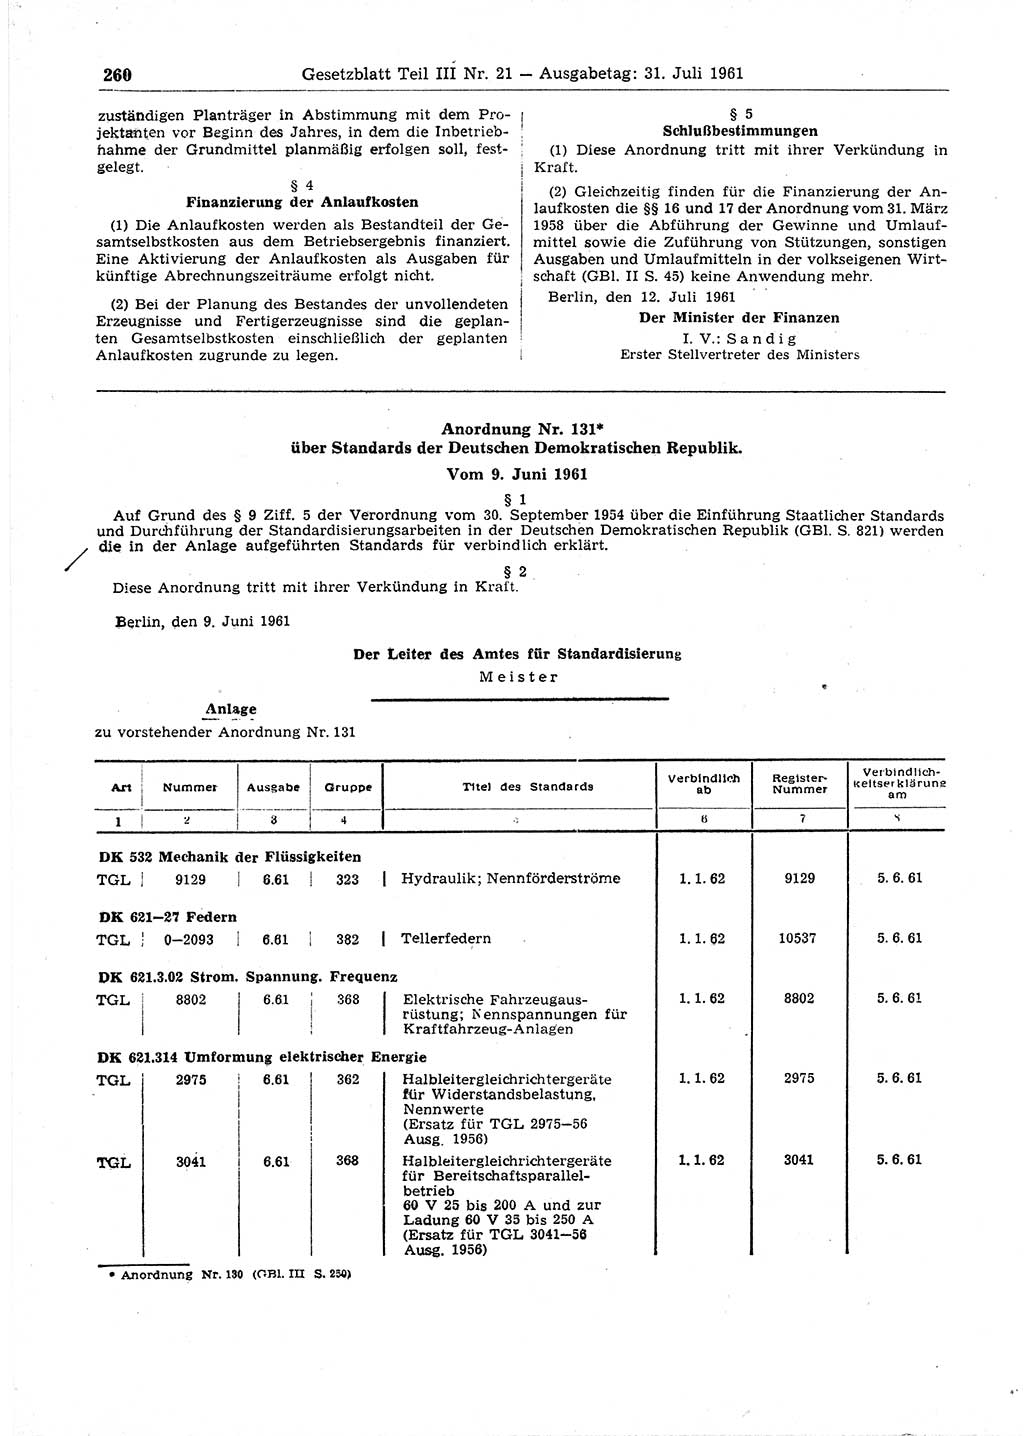 Gesetzblatt (GBl.) der Deutschen Demokratischen Republik (DDR) Teil ⅠⅠⅠ 1961, Seite 260 (GBl. DDR ⅠⅠⅠ 1961, S. 260)